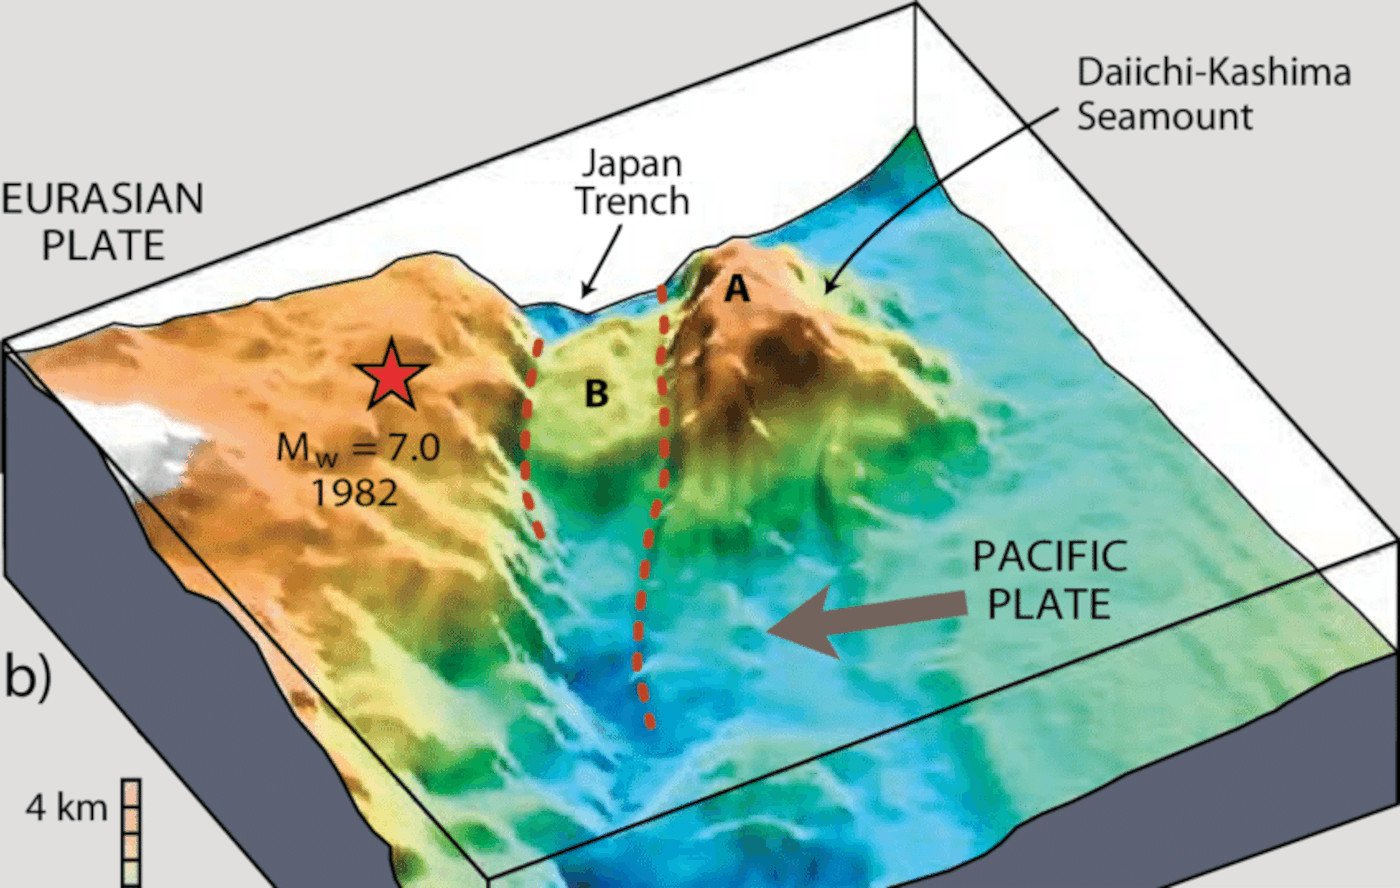 Un volcan sous-marin serait à l’origine des puissants séismes survenus au Japon ces dernières décennies